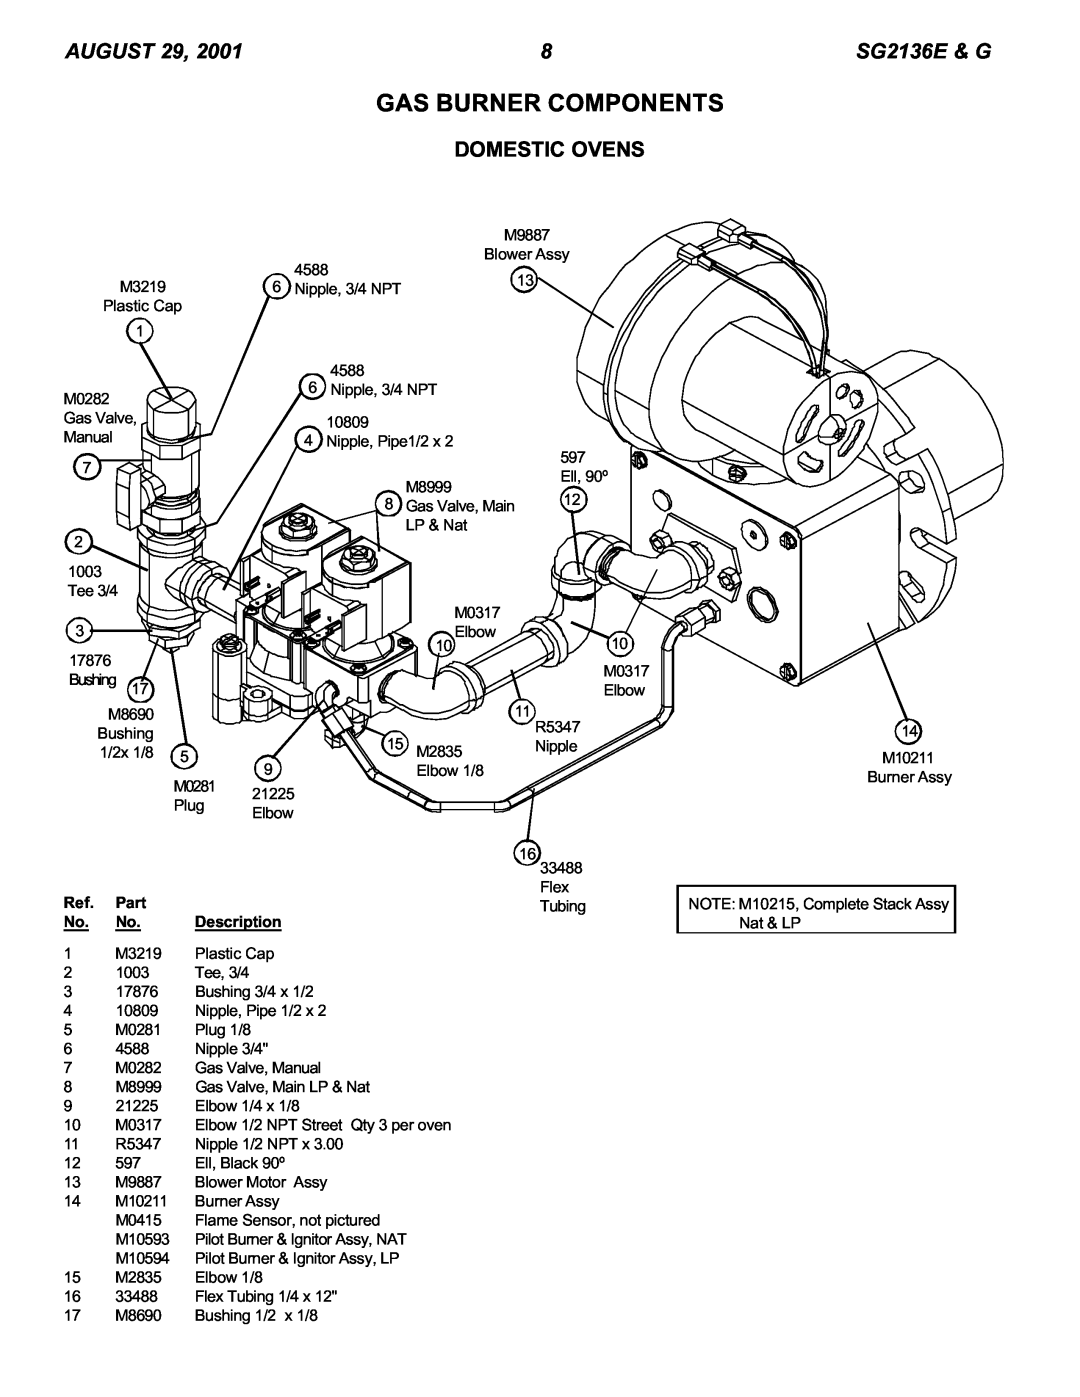 Blodgett SG2136 E & G manual Gas Burner Components, Domestic Ovens, Part, Description 